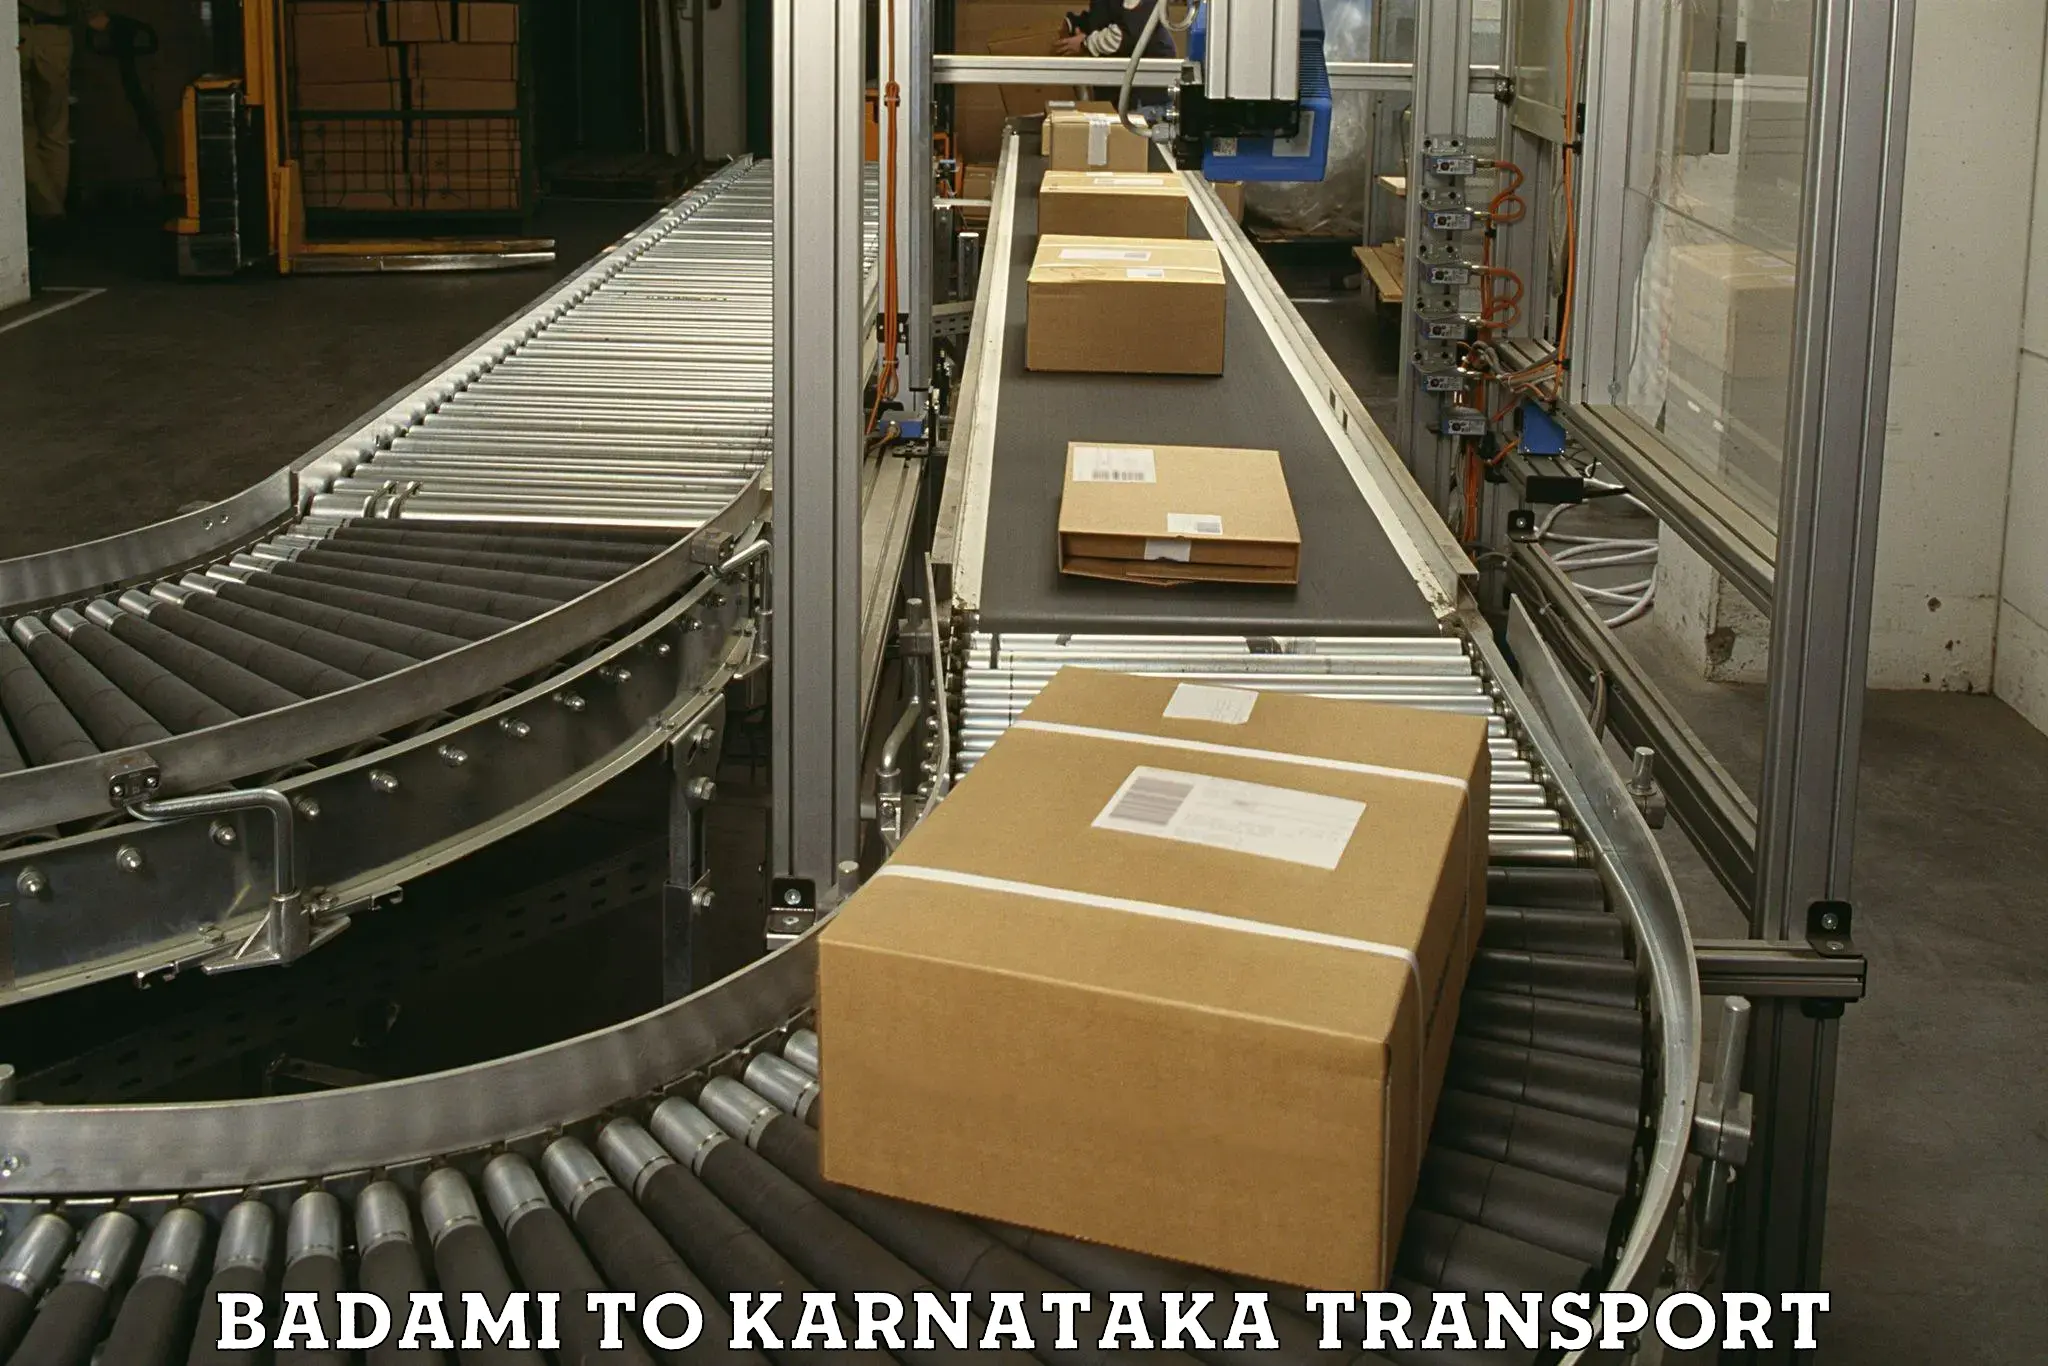 Online transport service Badami to Karnataka